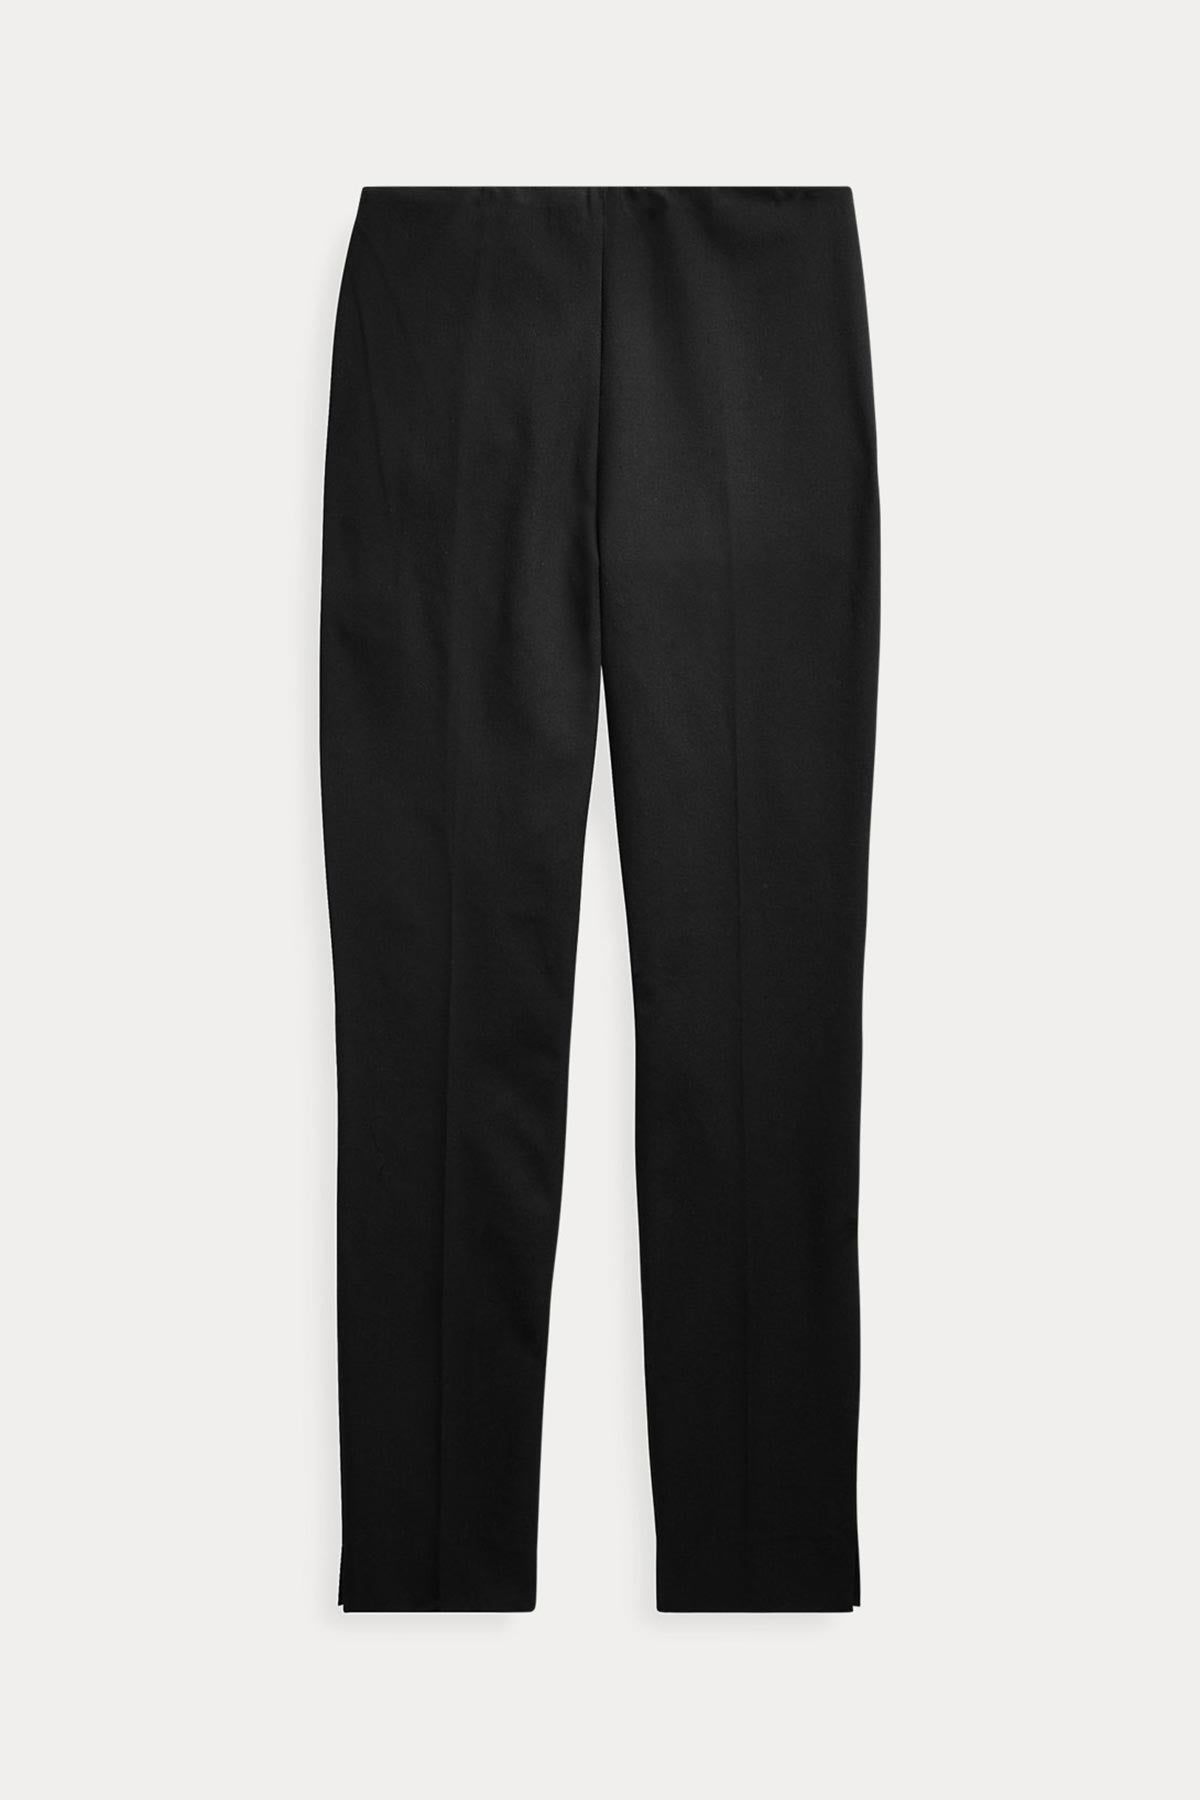 Polo Ralph Lauren Bi Stretch Skinny Pantolon-Libas Trendy Fashion Store